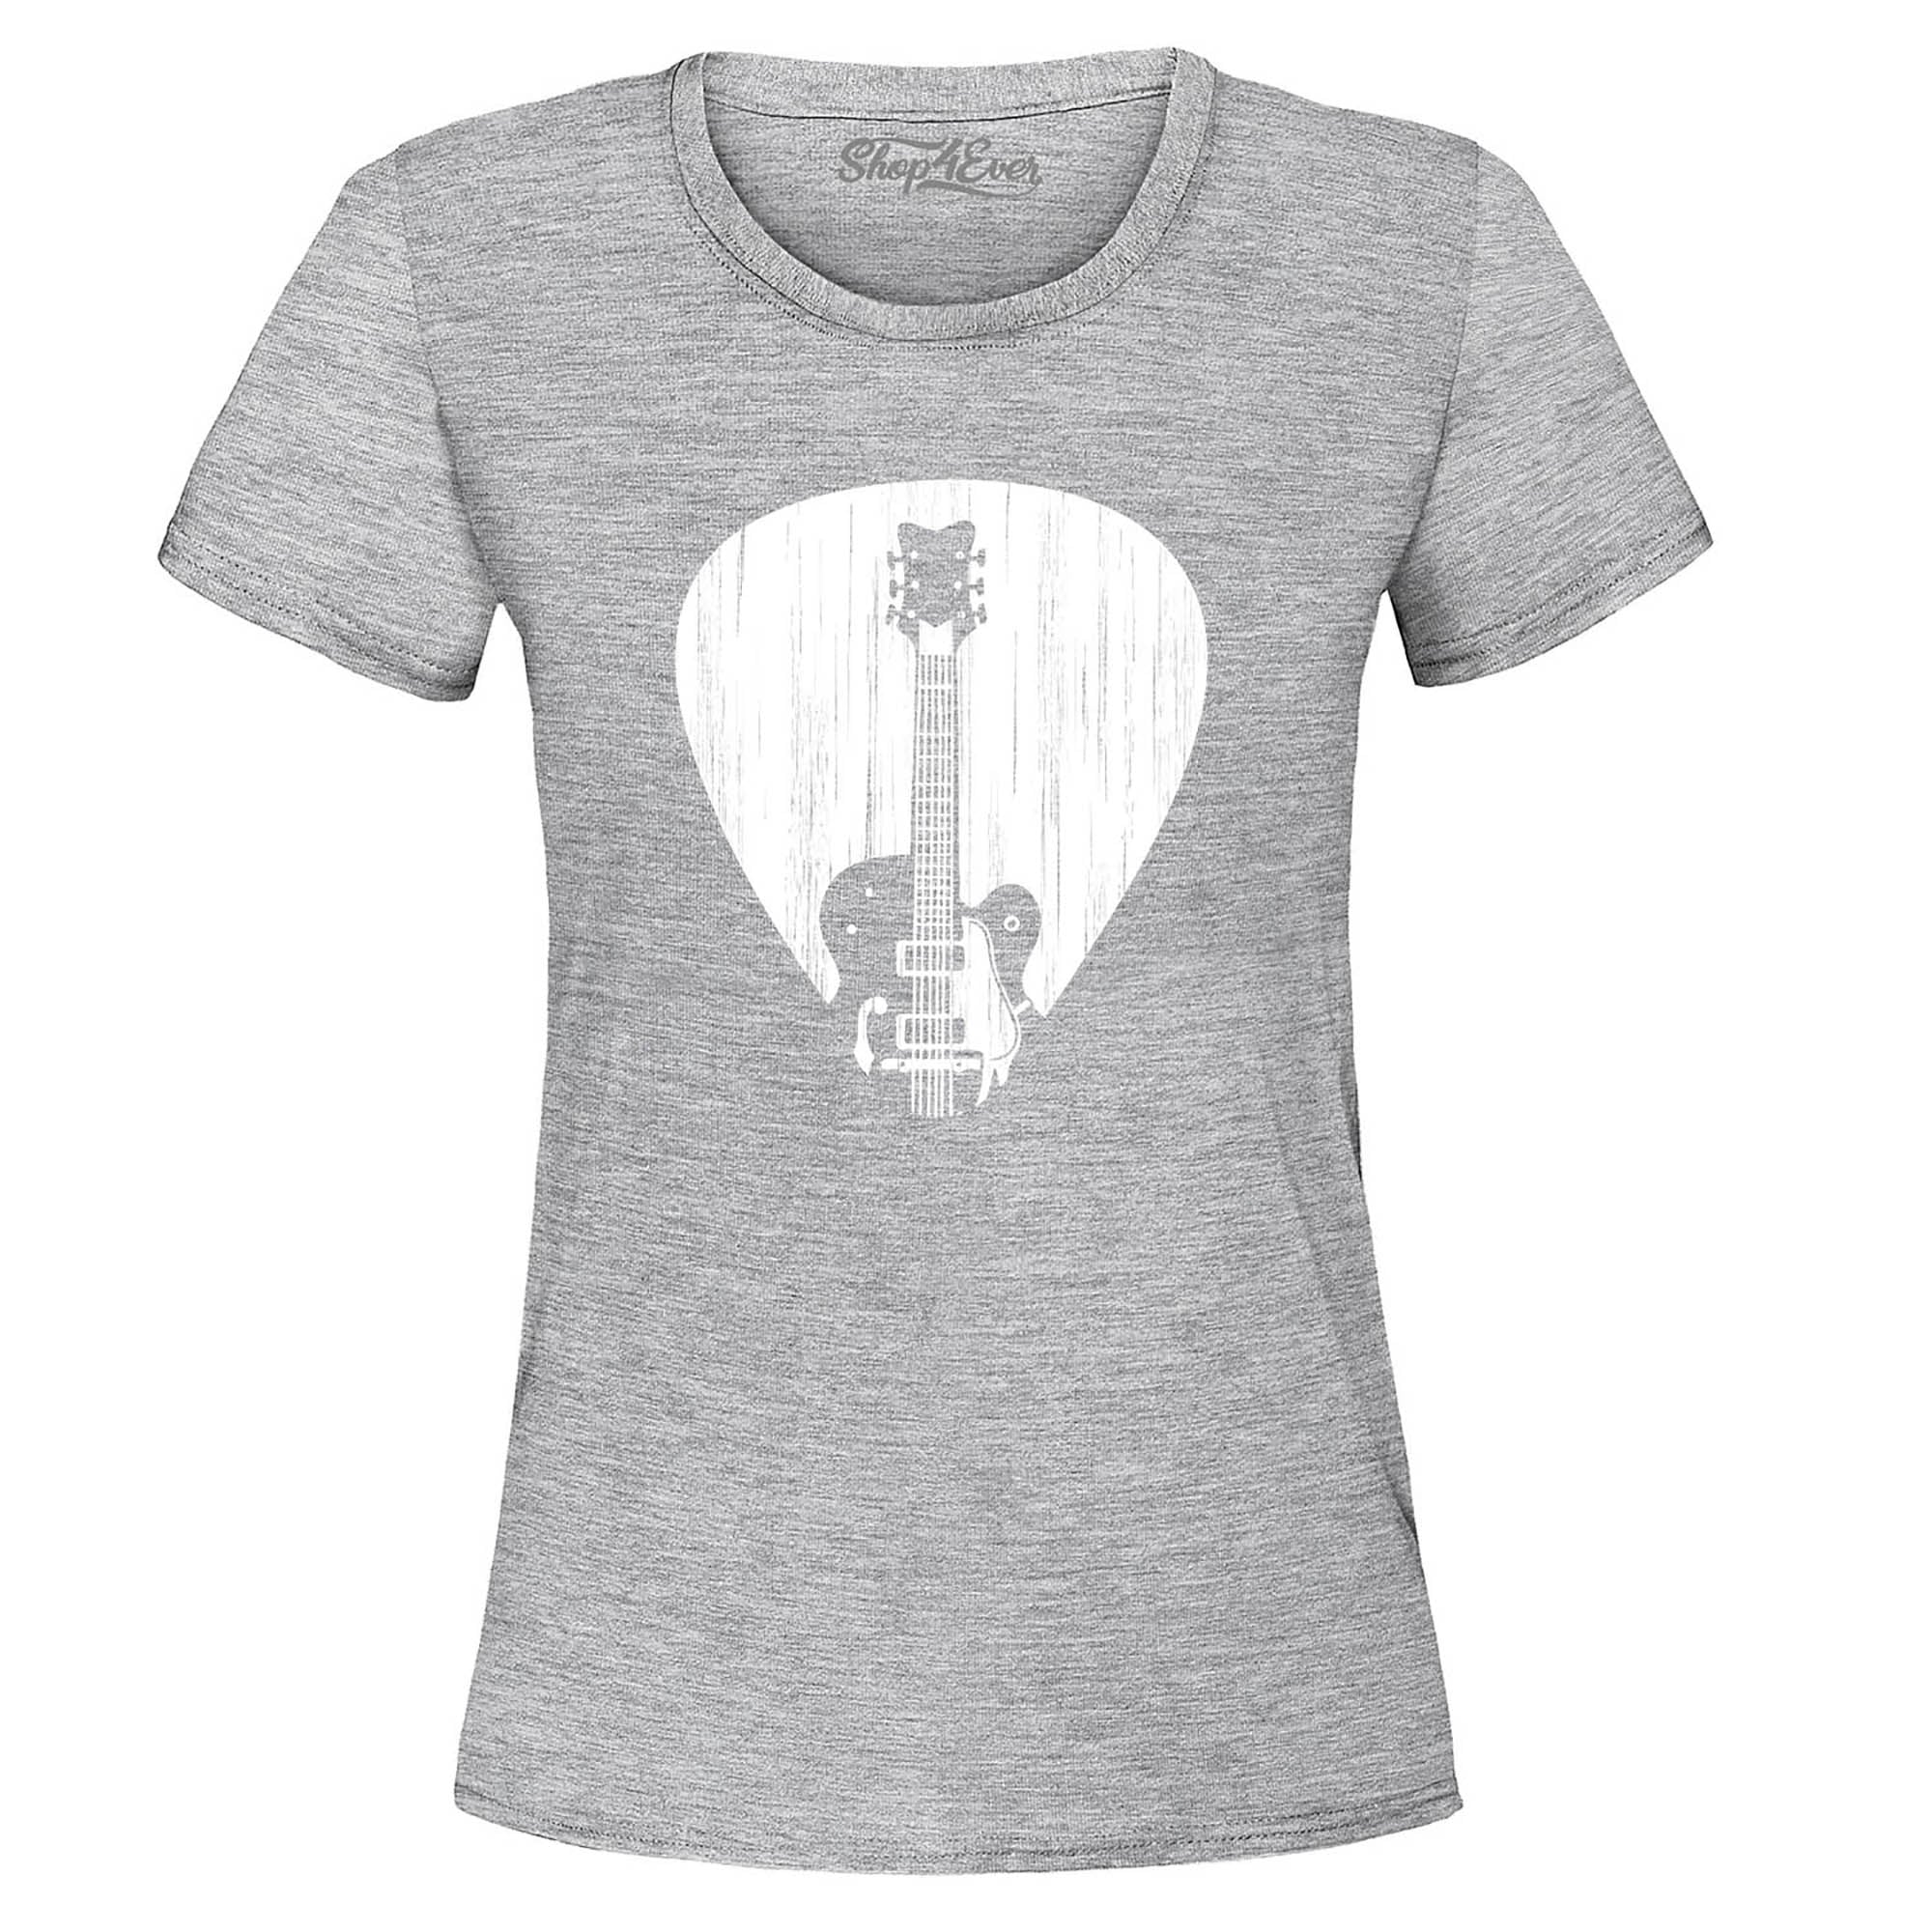 Electric Guitar Pick Musician Women's T-Shirt